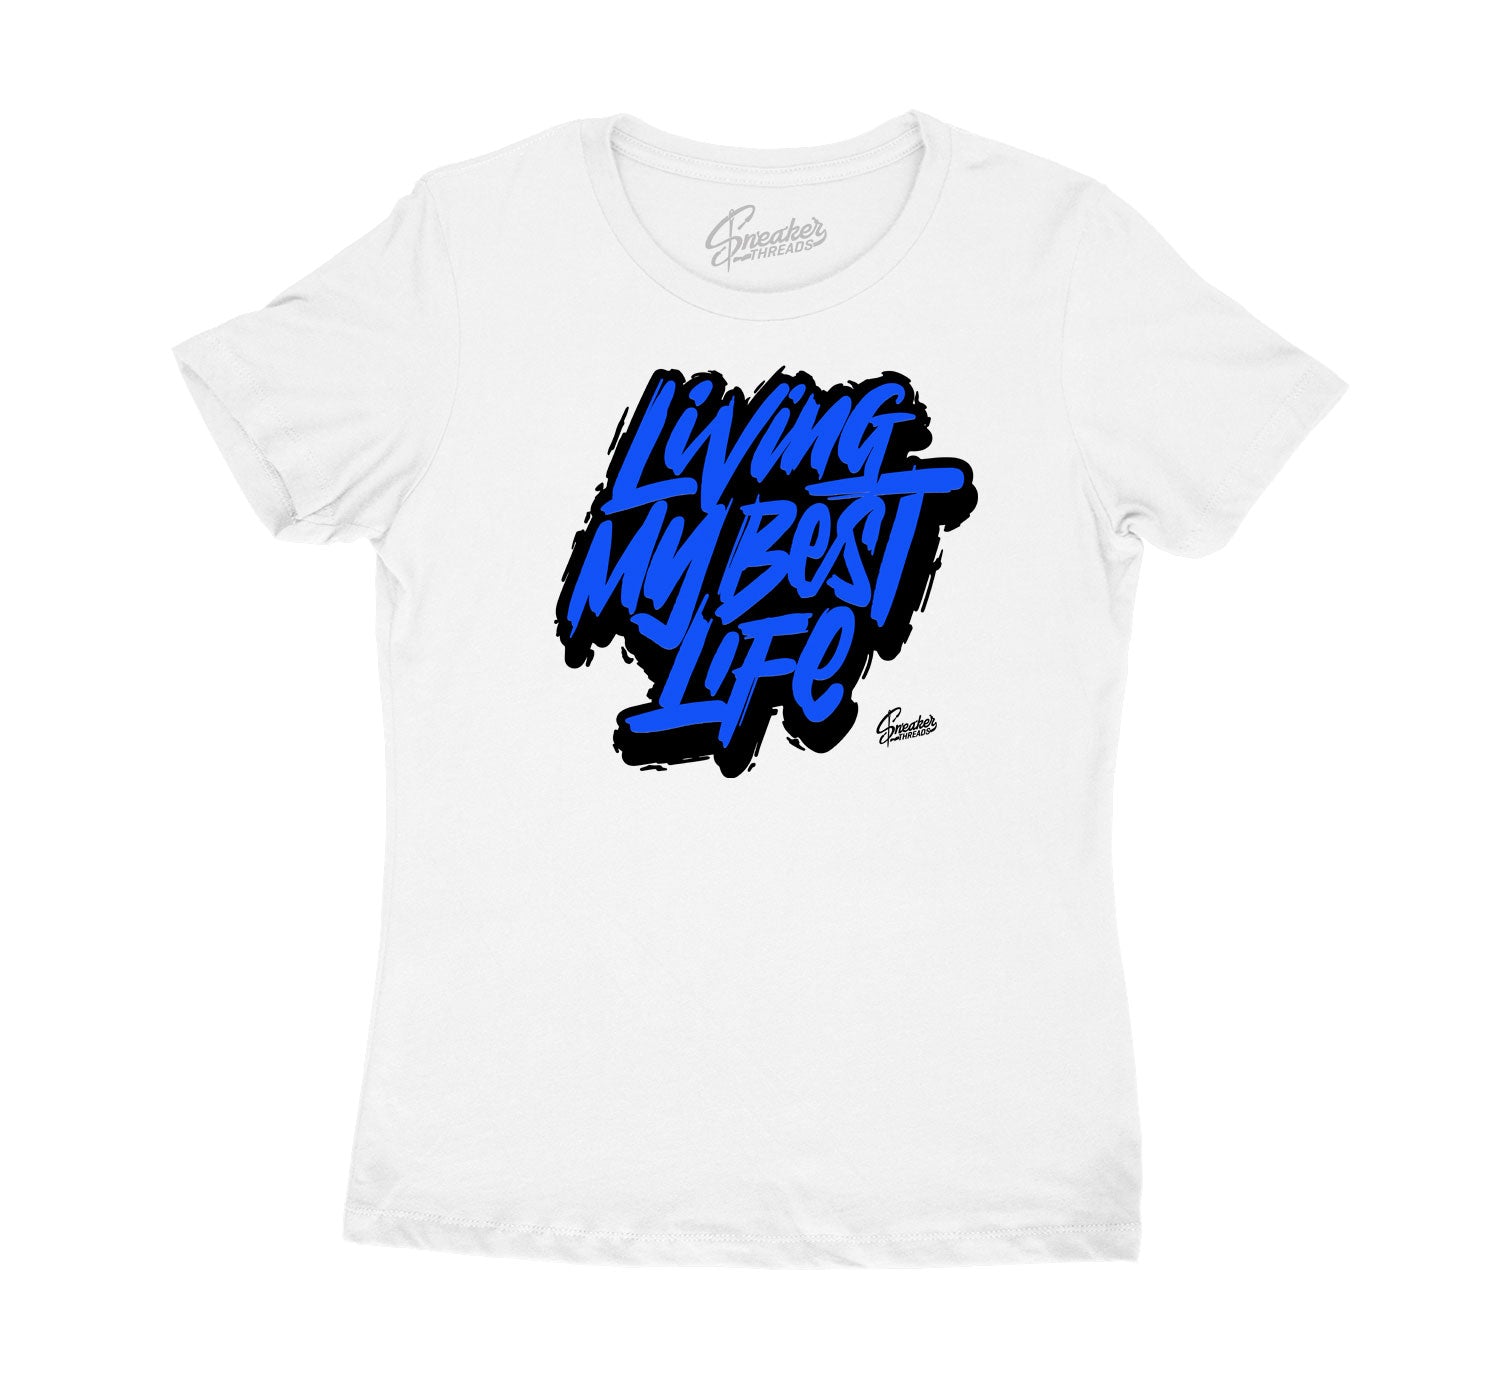 Womens Racer Blue 3 Shirt - Living Life - White